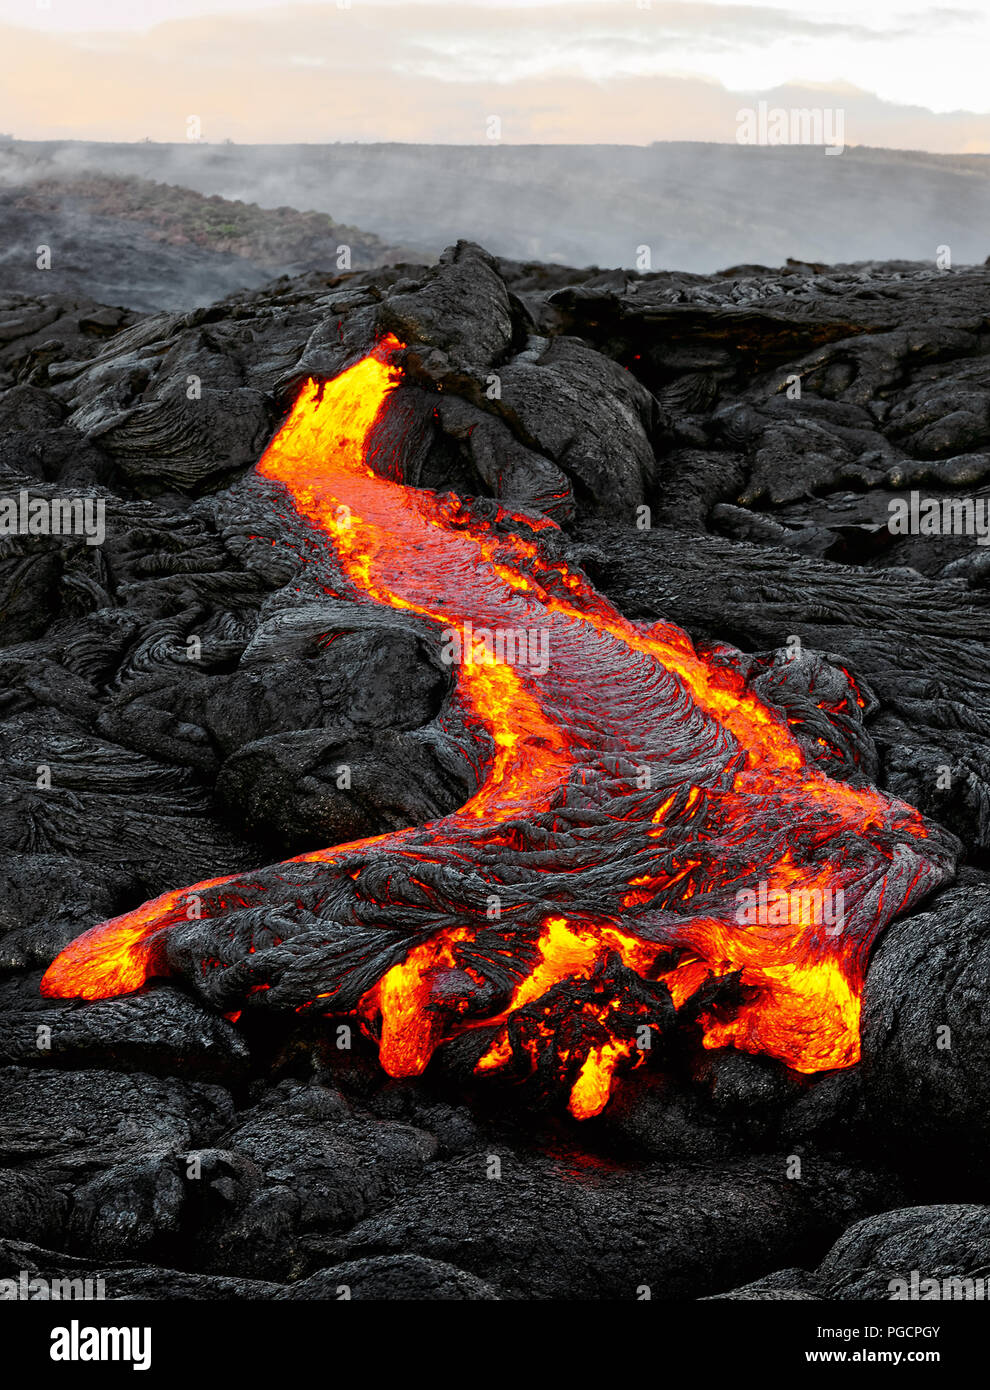 Un écoulement de lave émerge d'une colonne de la terre et s'écoule dans un paysage volcanique noire, dans le ciel montre la première lumière du jour - Lieu : Hawaii, Big Island, Banque D'Images